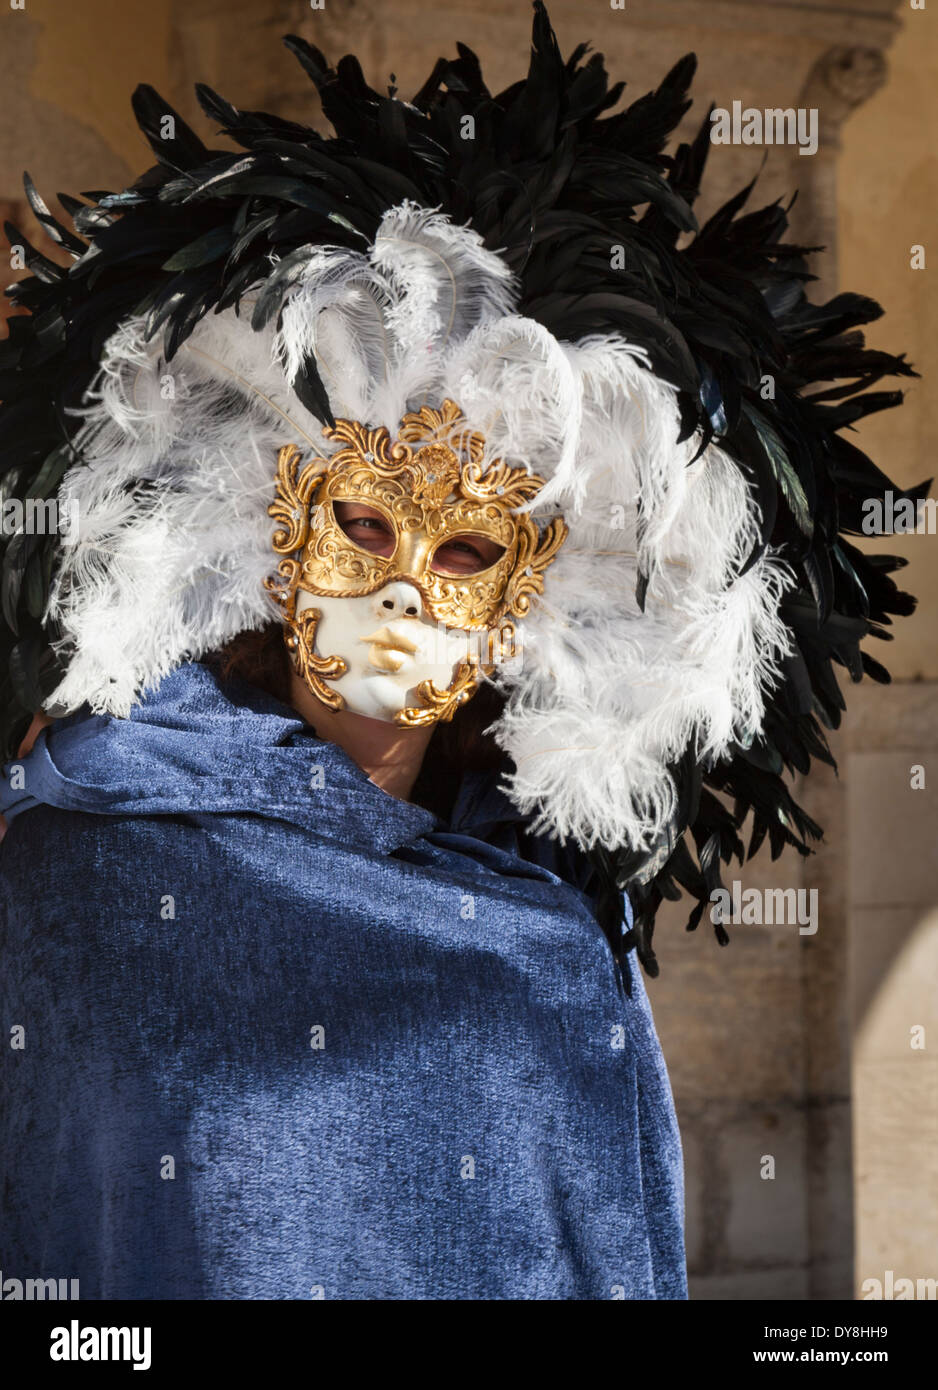 Gros plan portrait de l'homme sur le costume traditionnel rococo de carnaval de Venise, masque d'or et chapeau de plumes élaboré pour le célèbre festival, Venise Italie Banque D'Images